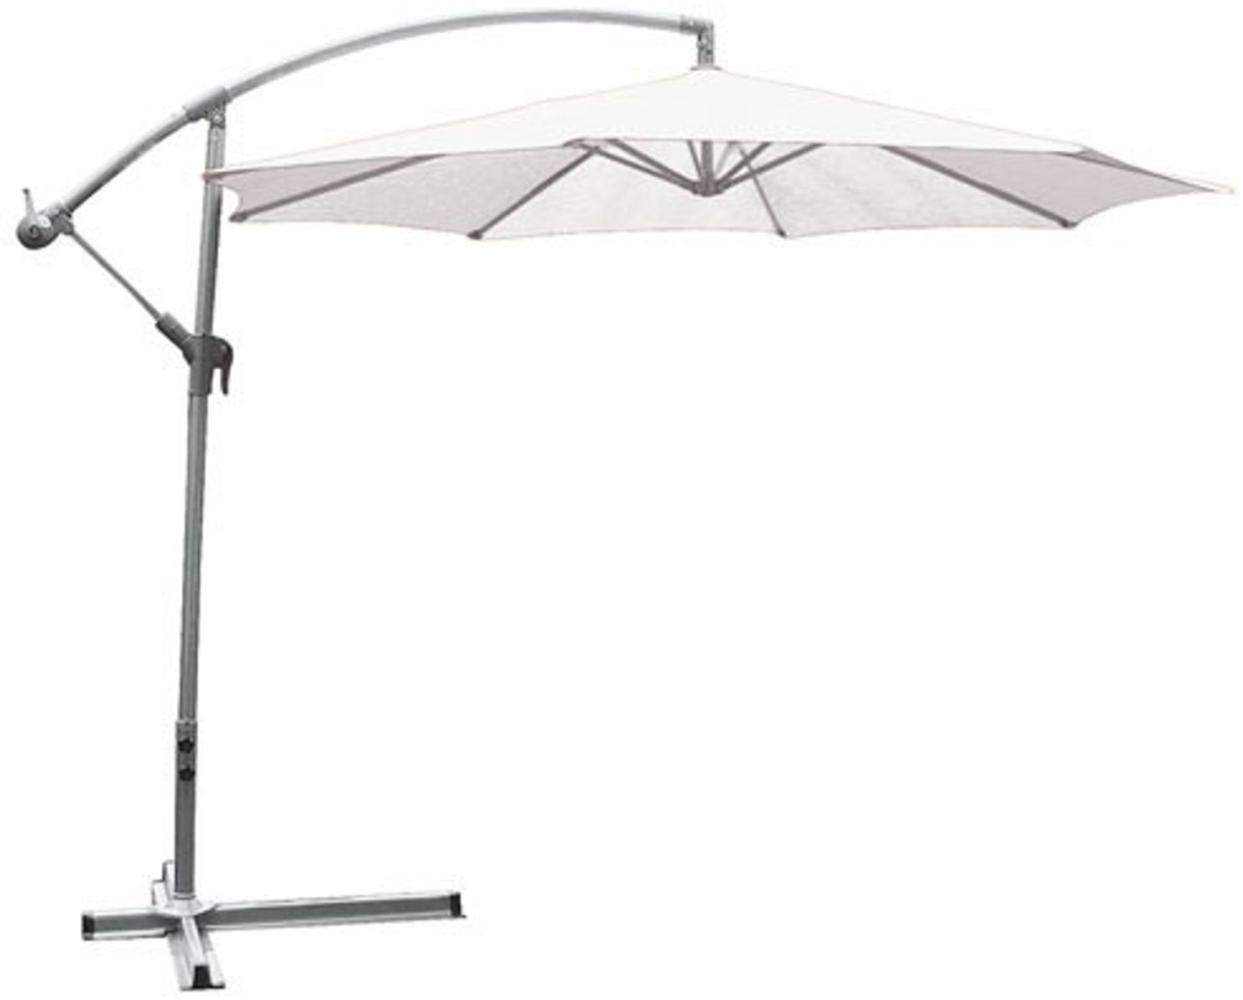 Deluxe-Ampelschirm weiss 3m Sonnenschirm Marktschirm Gartenschirm Schirm Bild 1